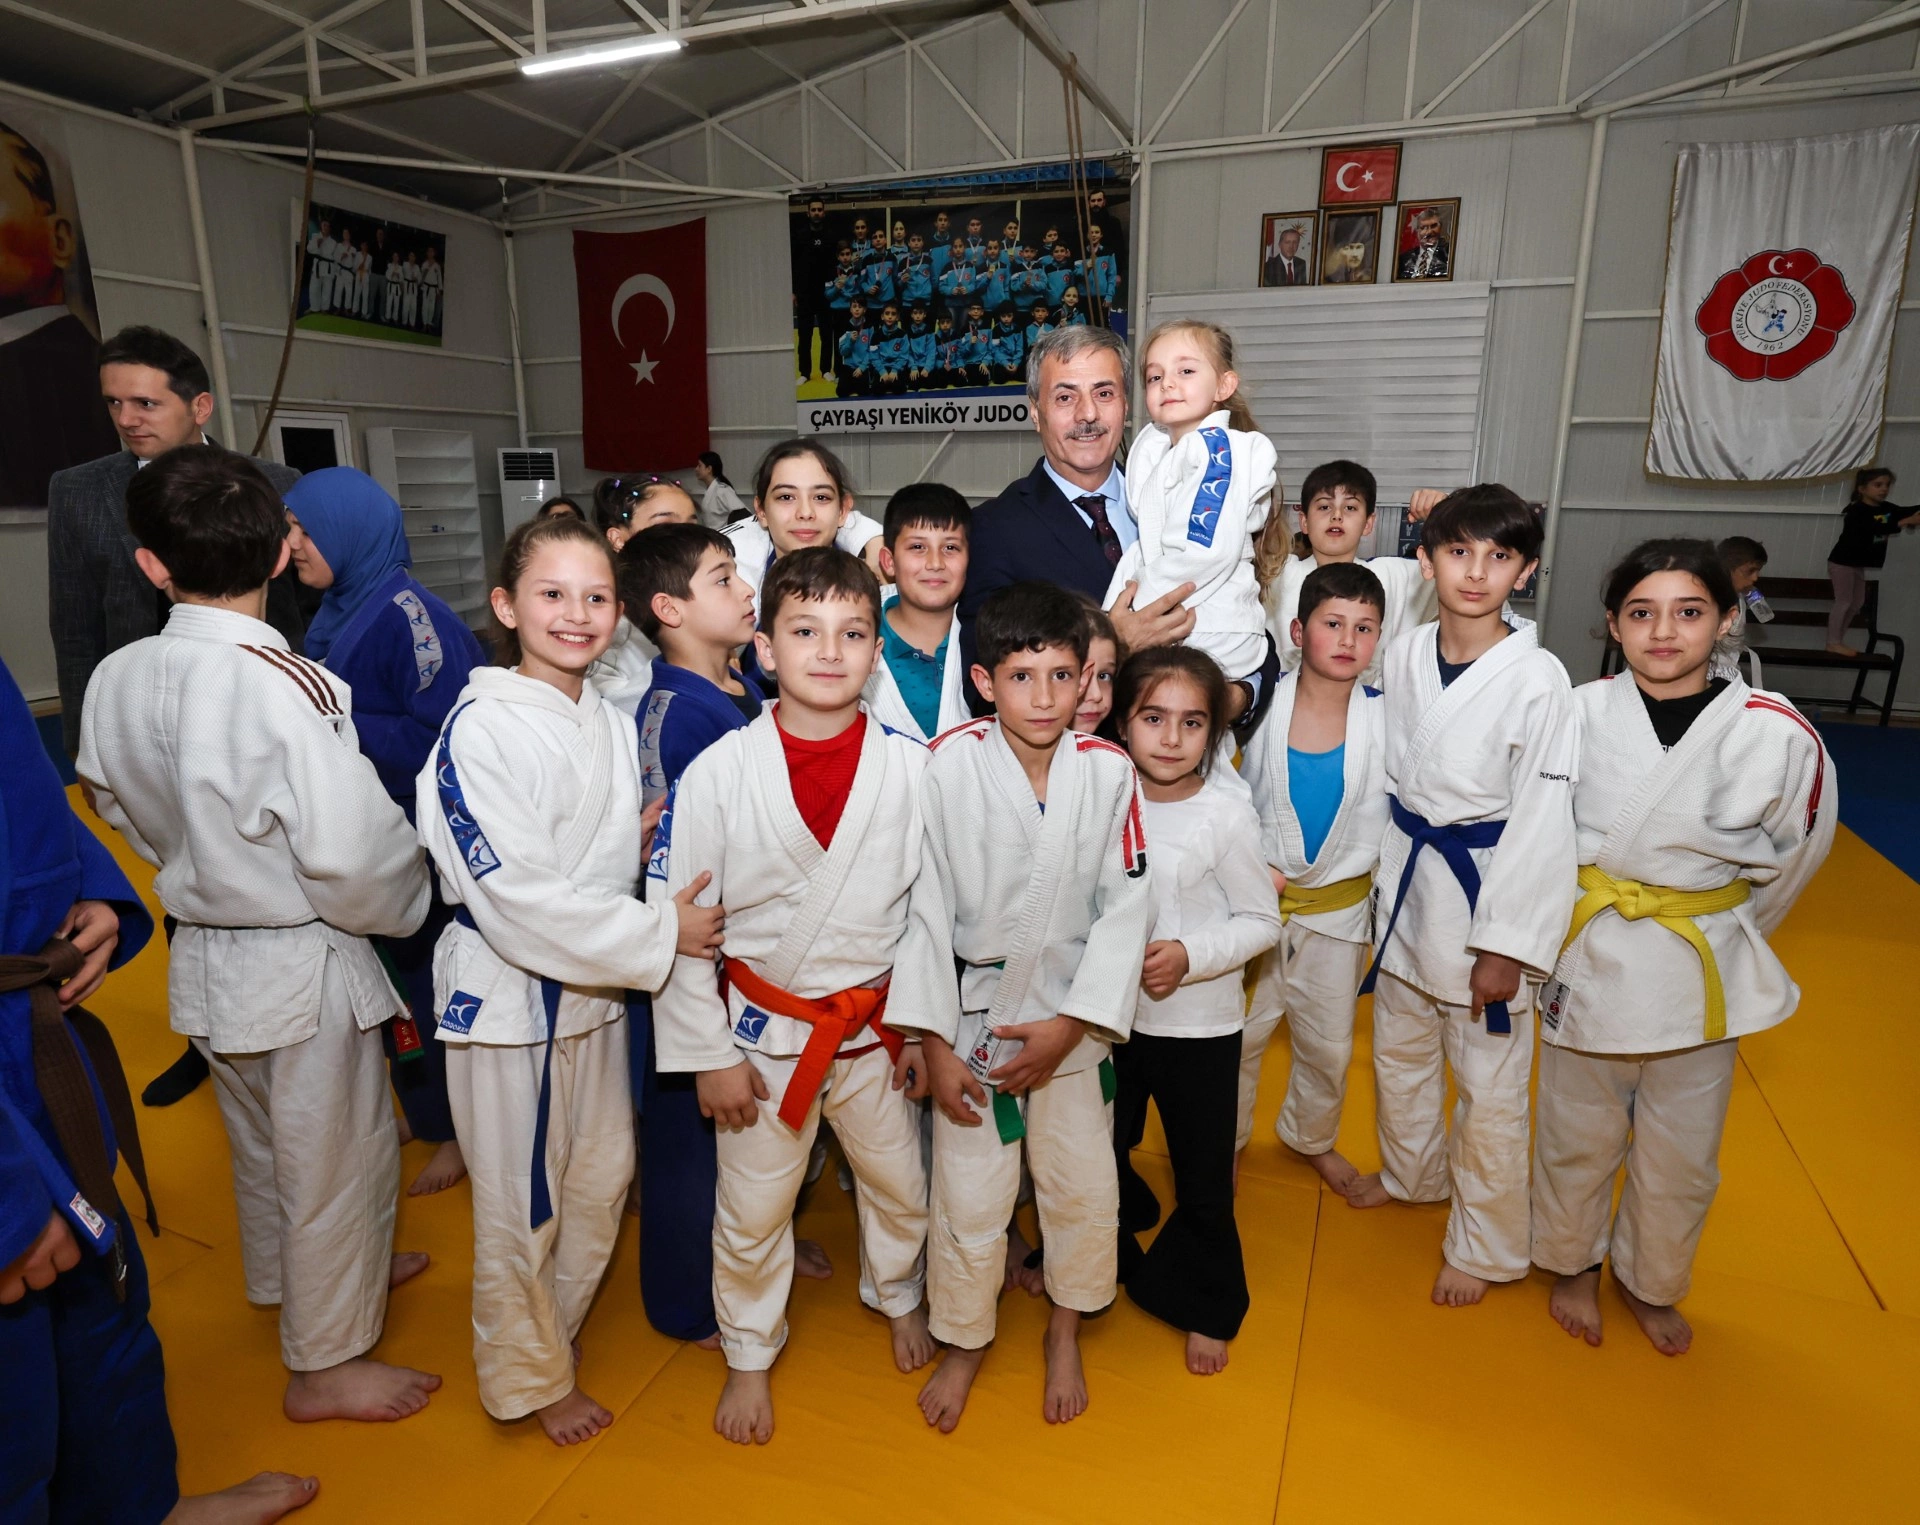 Yusuf Alemdar'dan minik judoculara özel ilgi: “Her ilçede yeni spor tesisleri inşa edeceğiz”